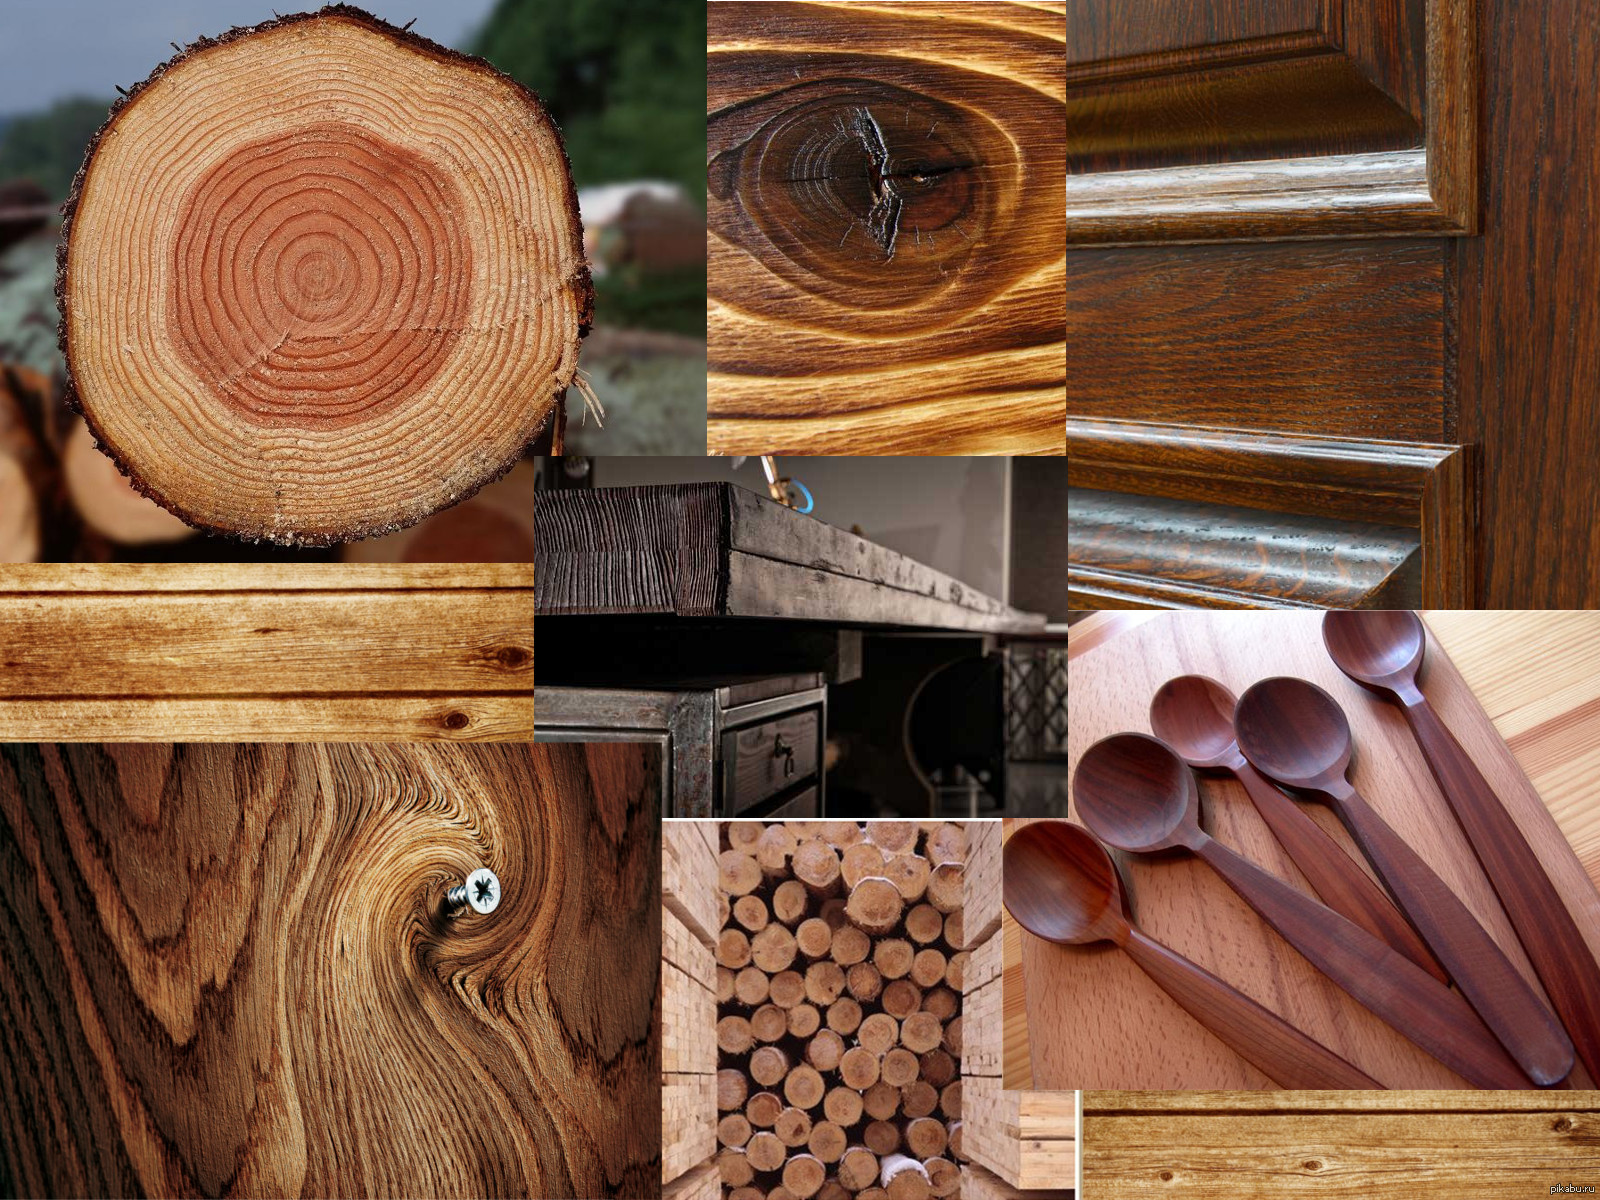 Виды деревообработки. Дерево строительный материал. Обработанное дерево. Древесина и древесные материалы. Интересные изделия из дерева.